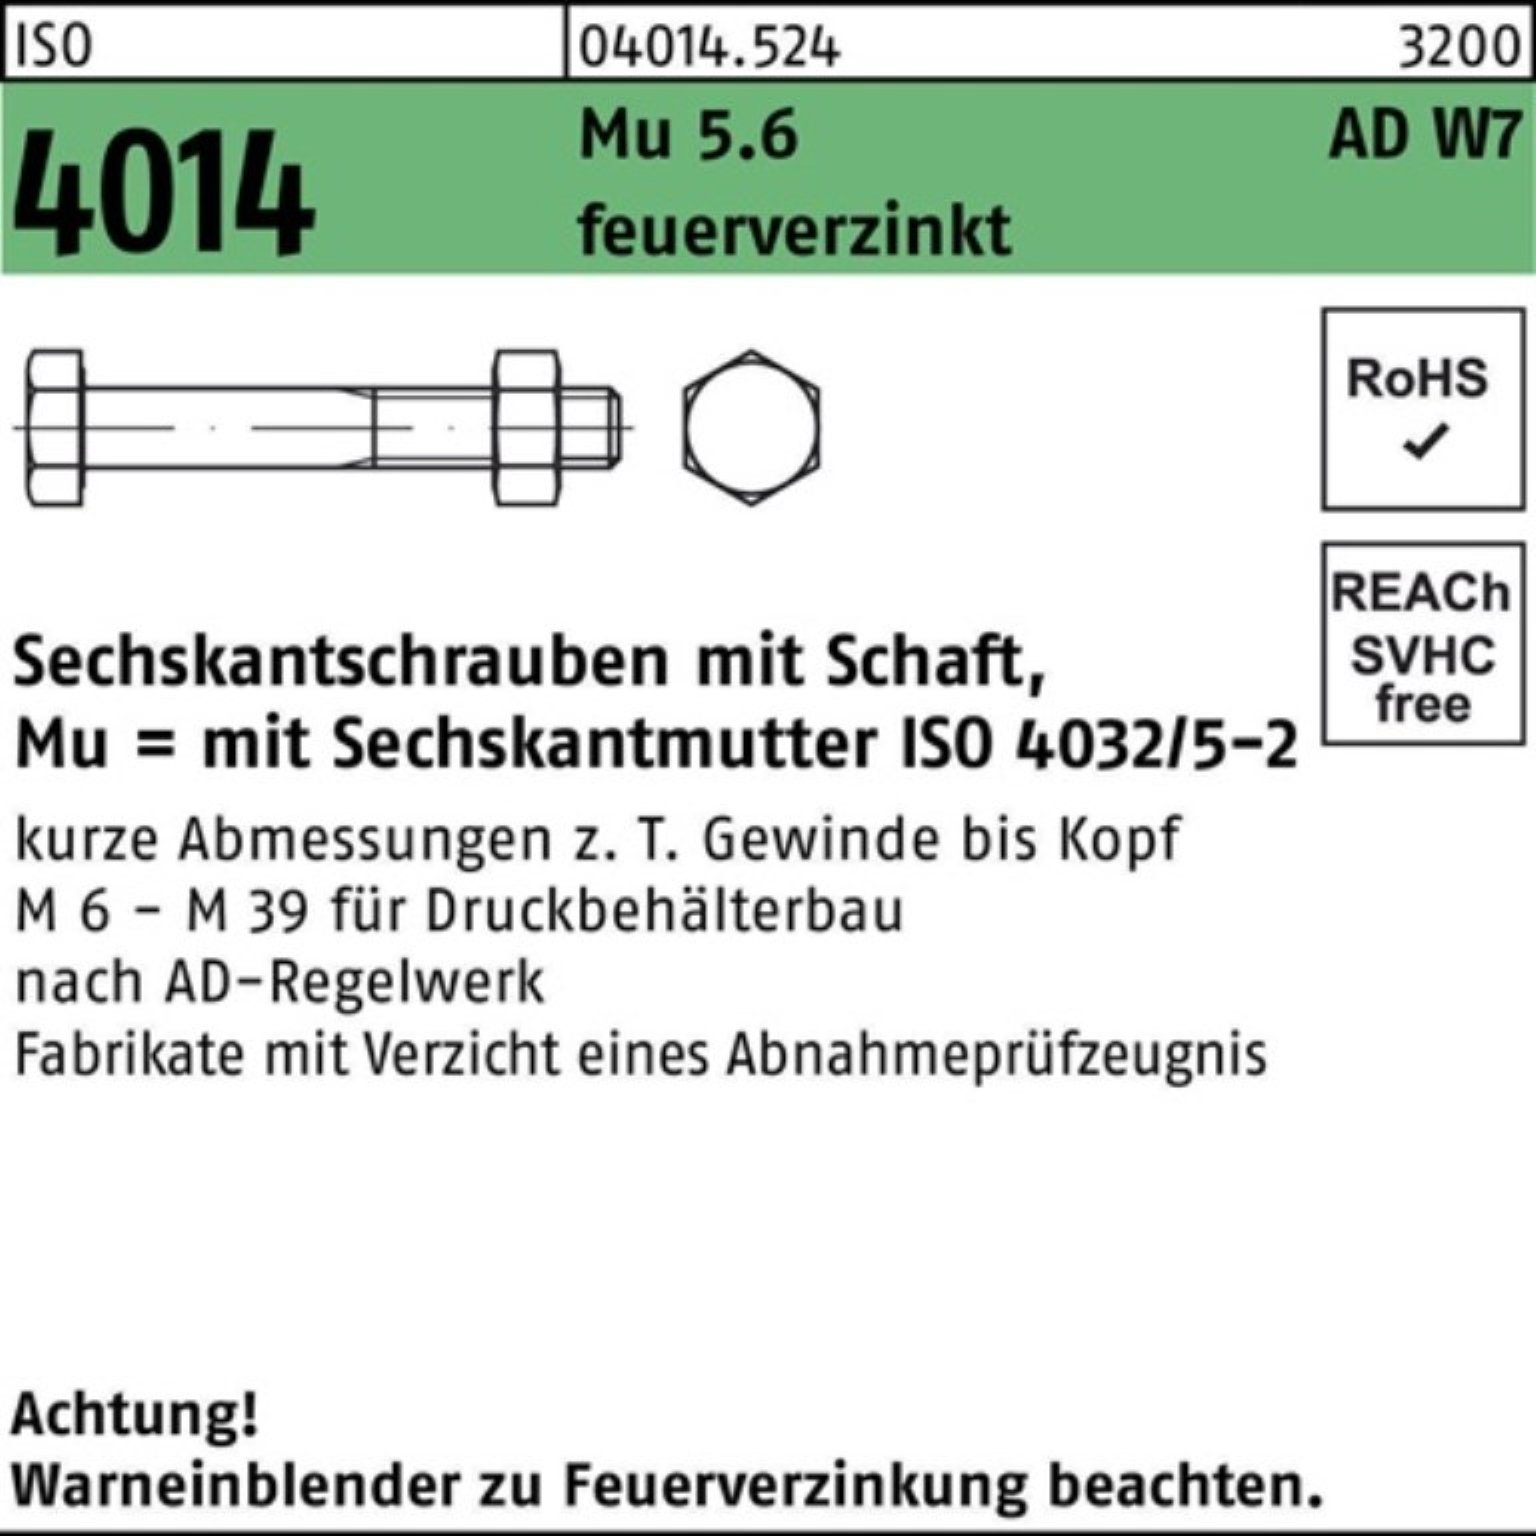 feuerve Sechskantschraube Sechskantschraube Mu Pack 50 Schaft 5.6 W7 Bufab ISO 4014 100er M12x